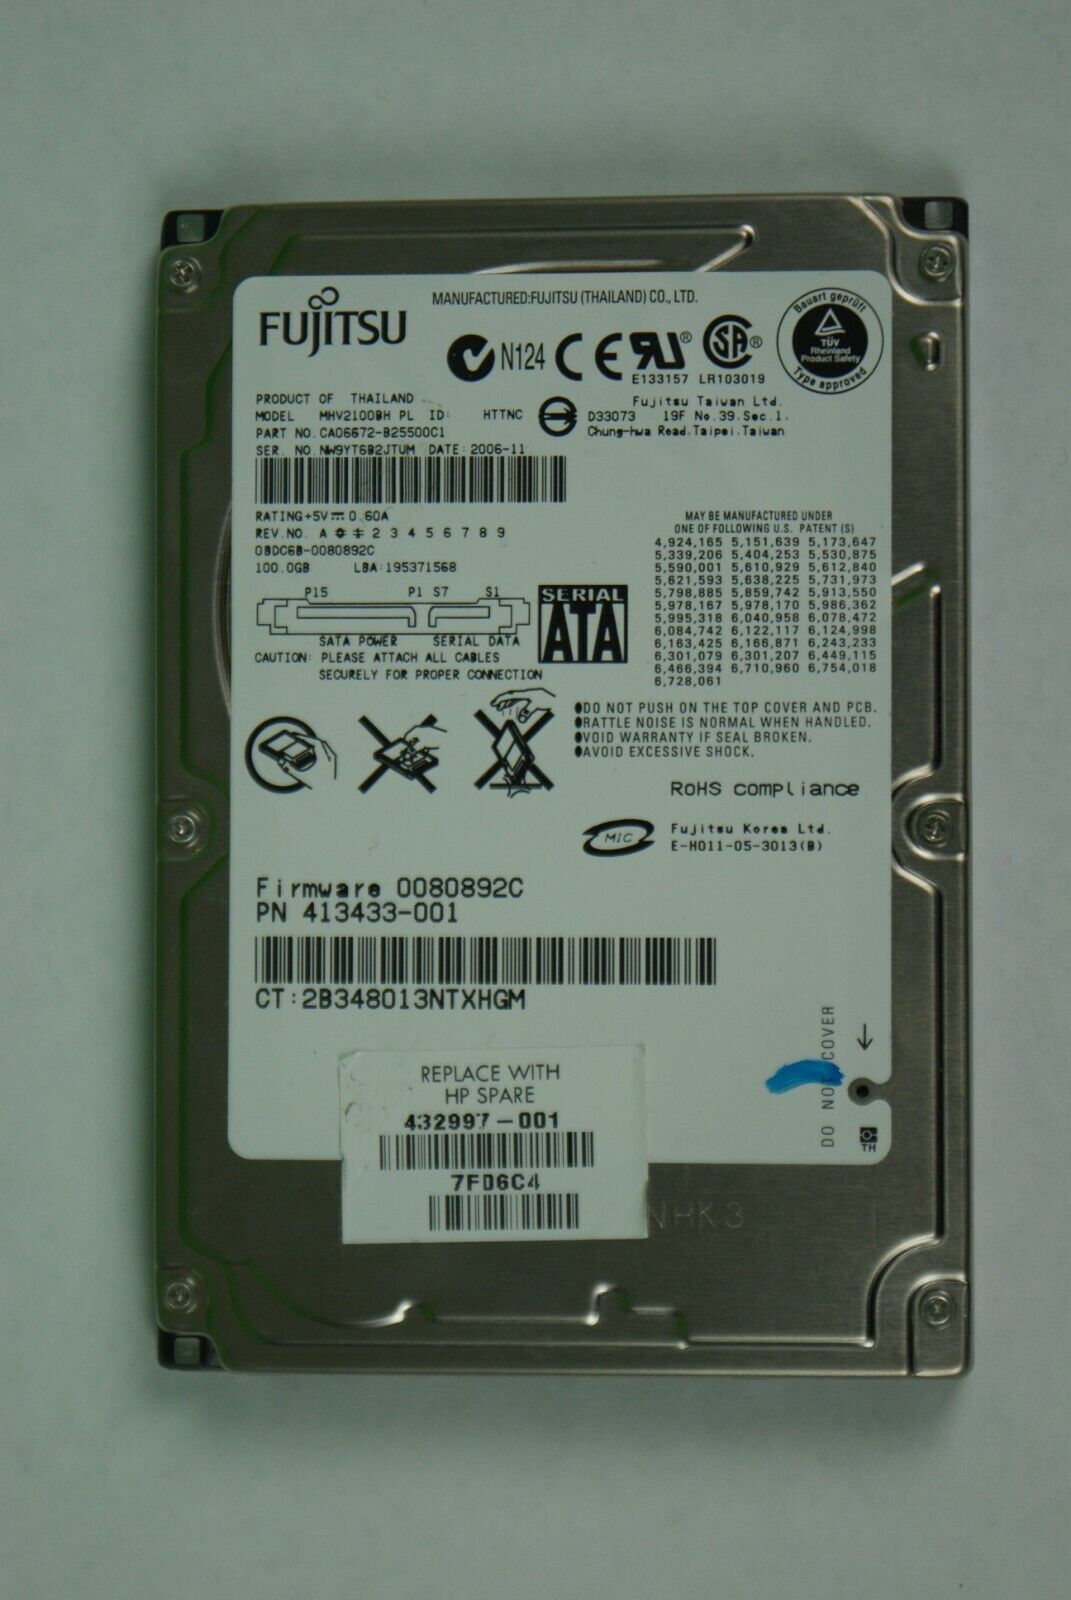 Fujitsu MHV2100BH PL 100GB 2.5\